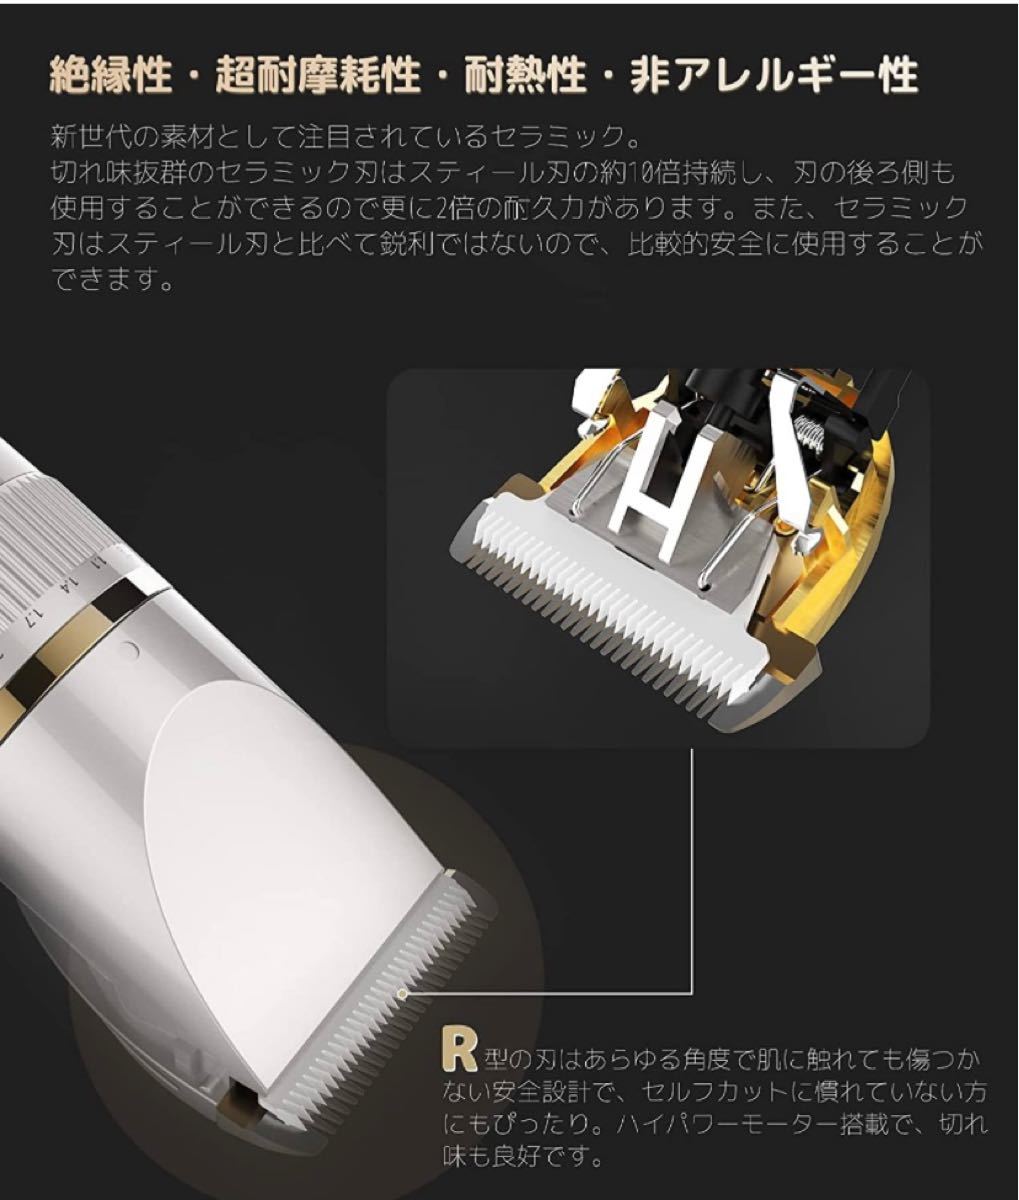 電動バリカン ヘアカッター ヘア カット USB充電 日本語説明書付き